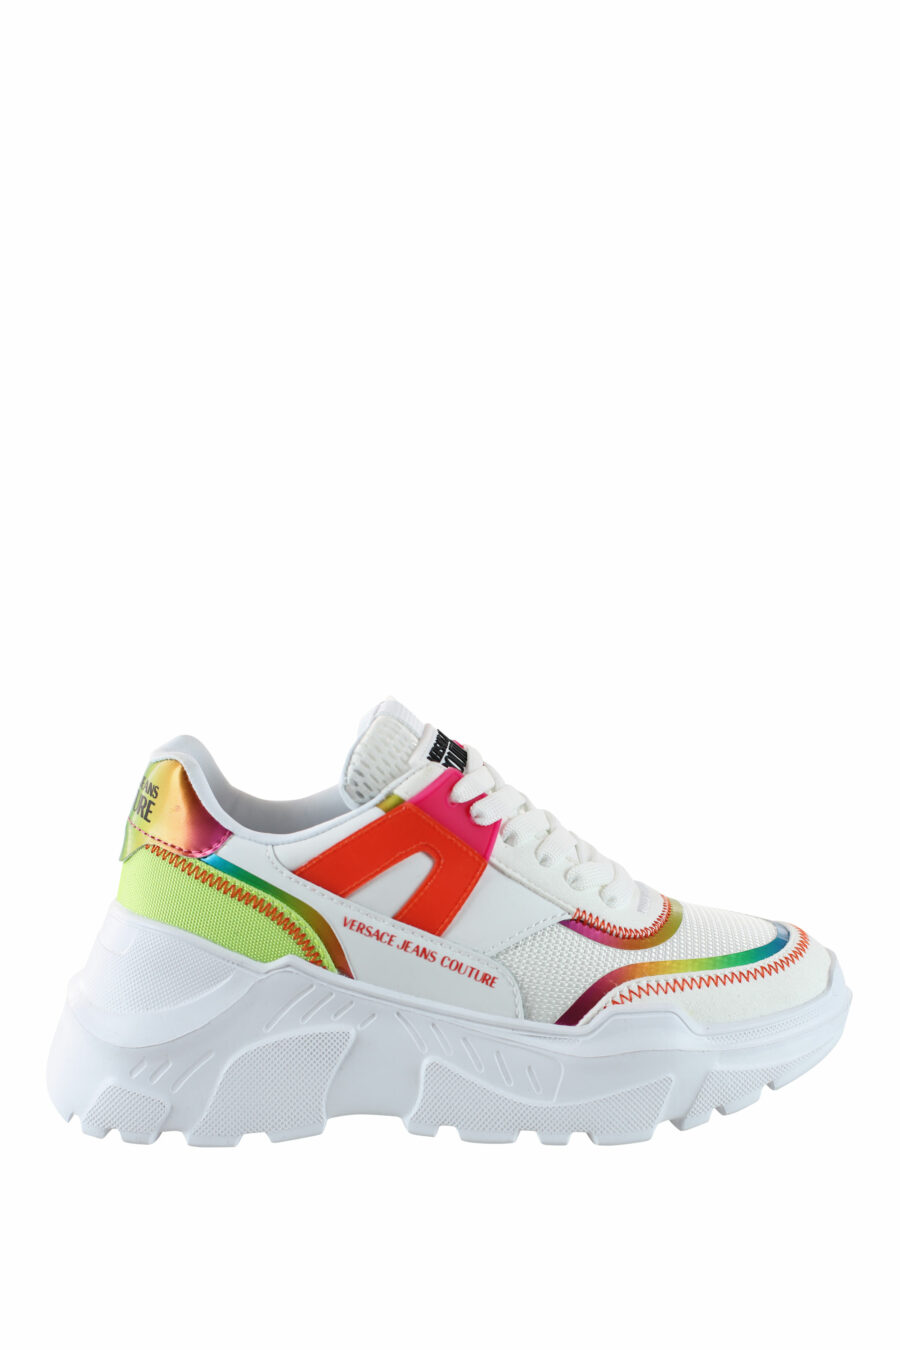 Zapatillas blancas multicolor reflectivo - IMG 4492